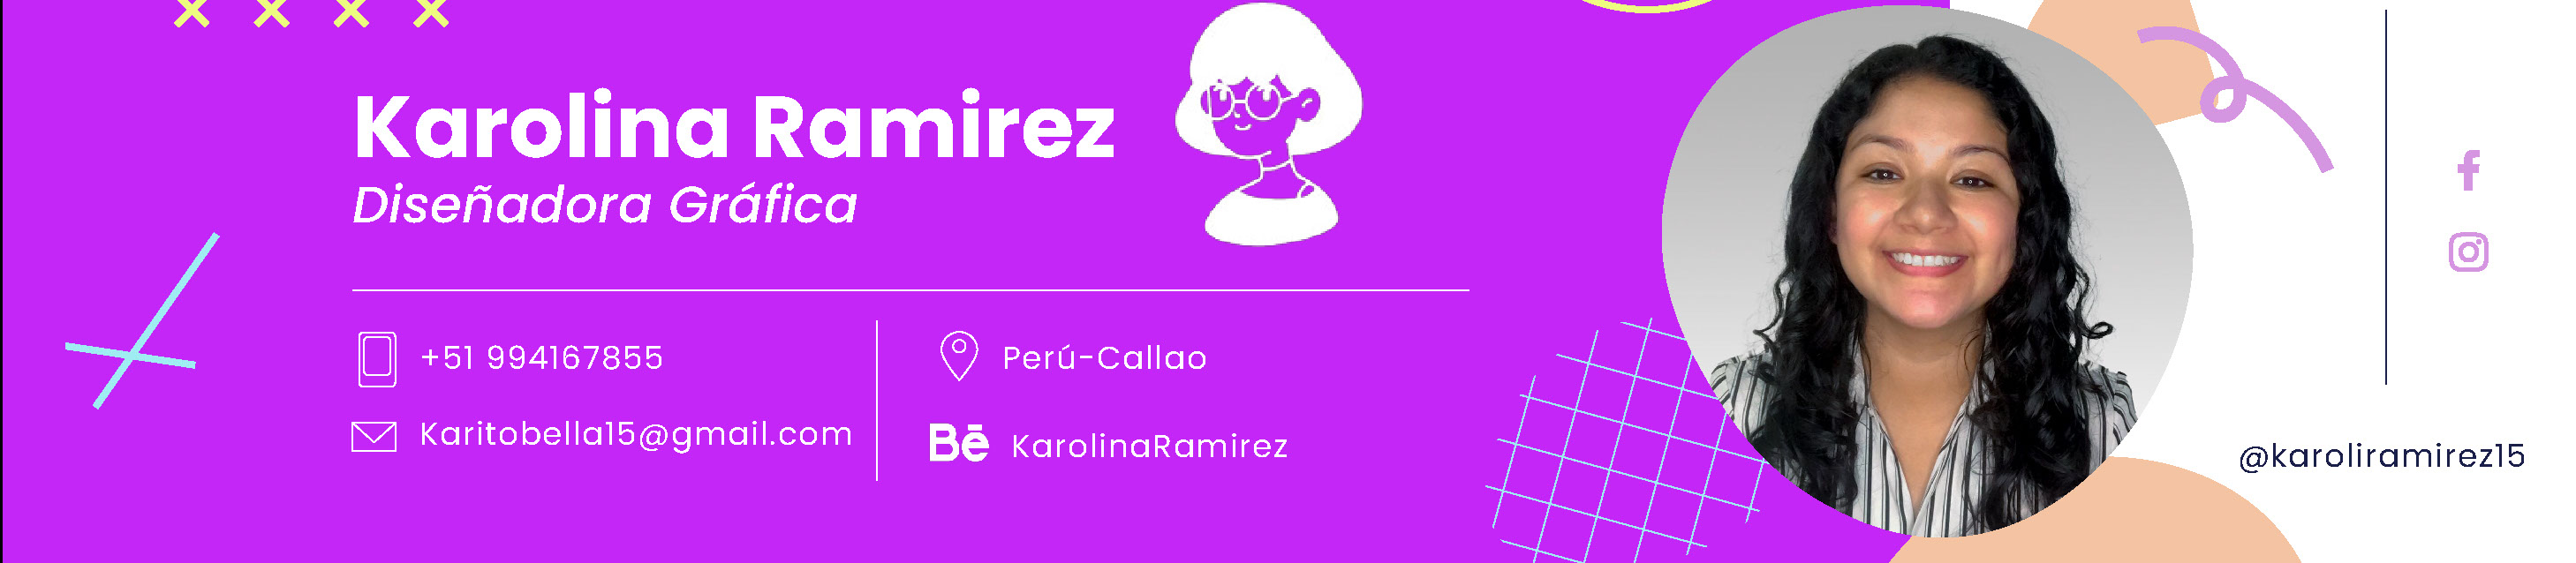 Profil-Banner von Karolina Ramirez